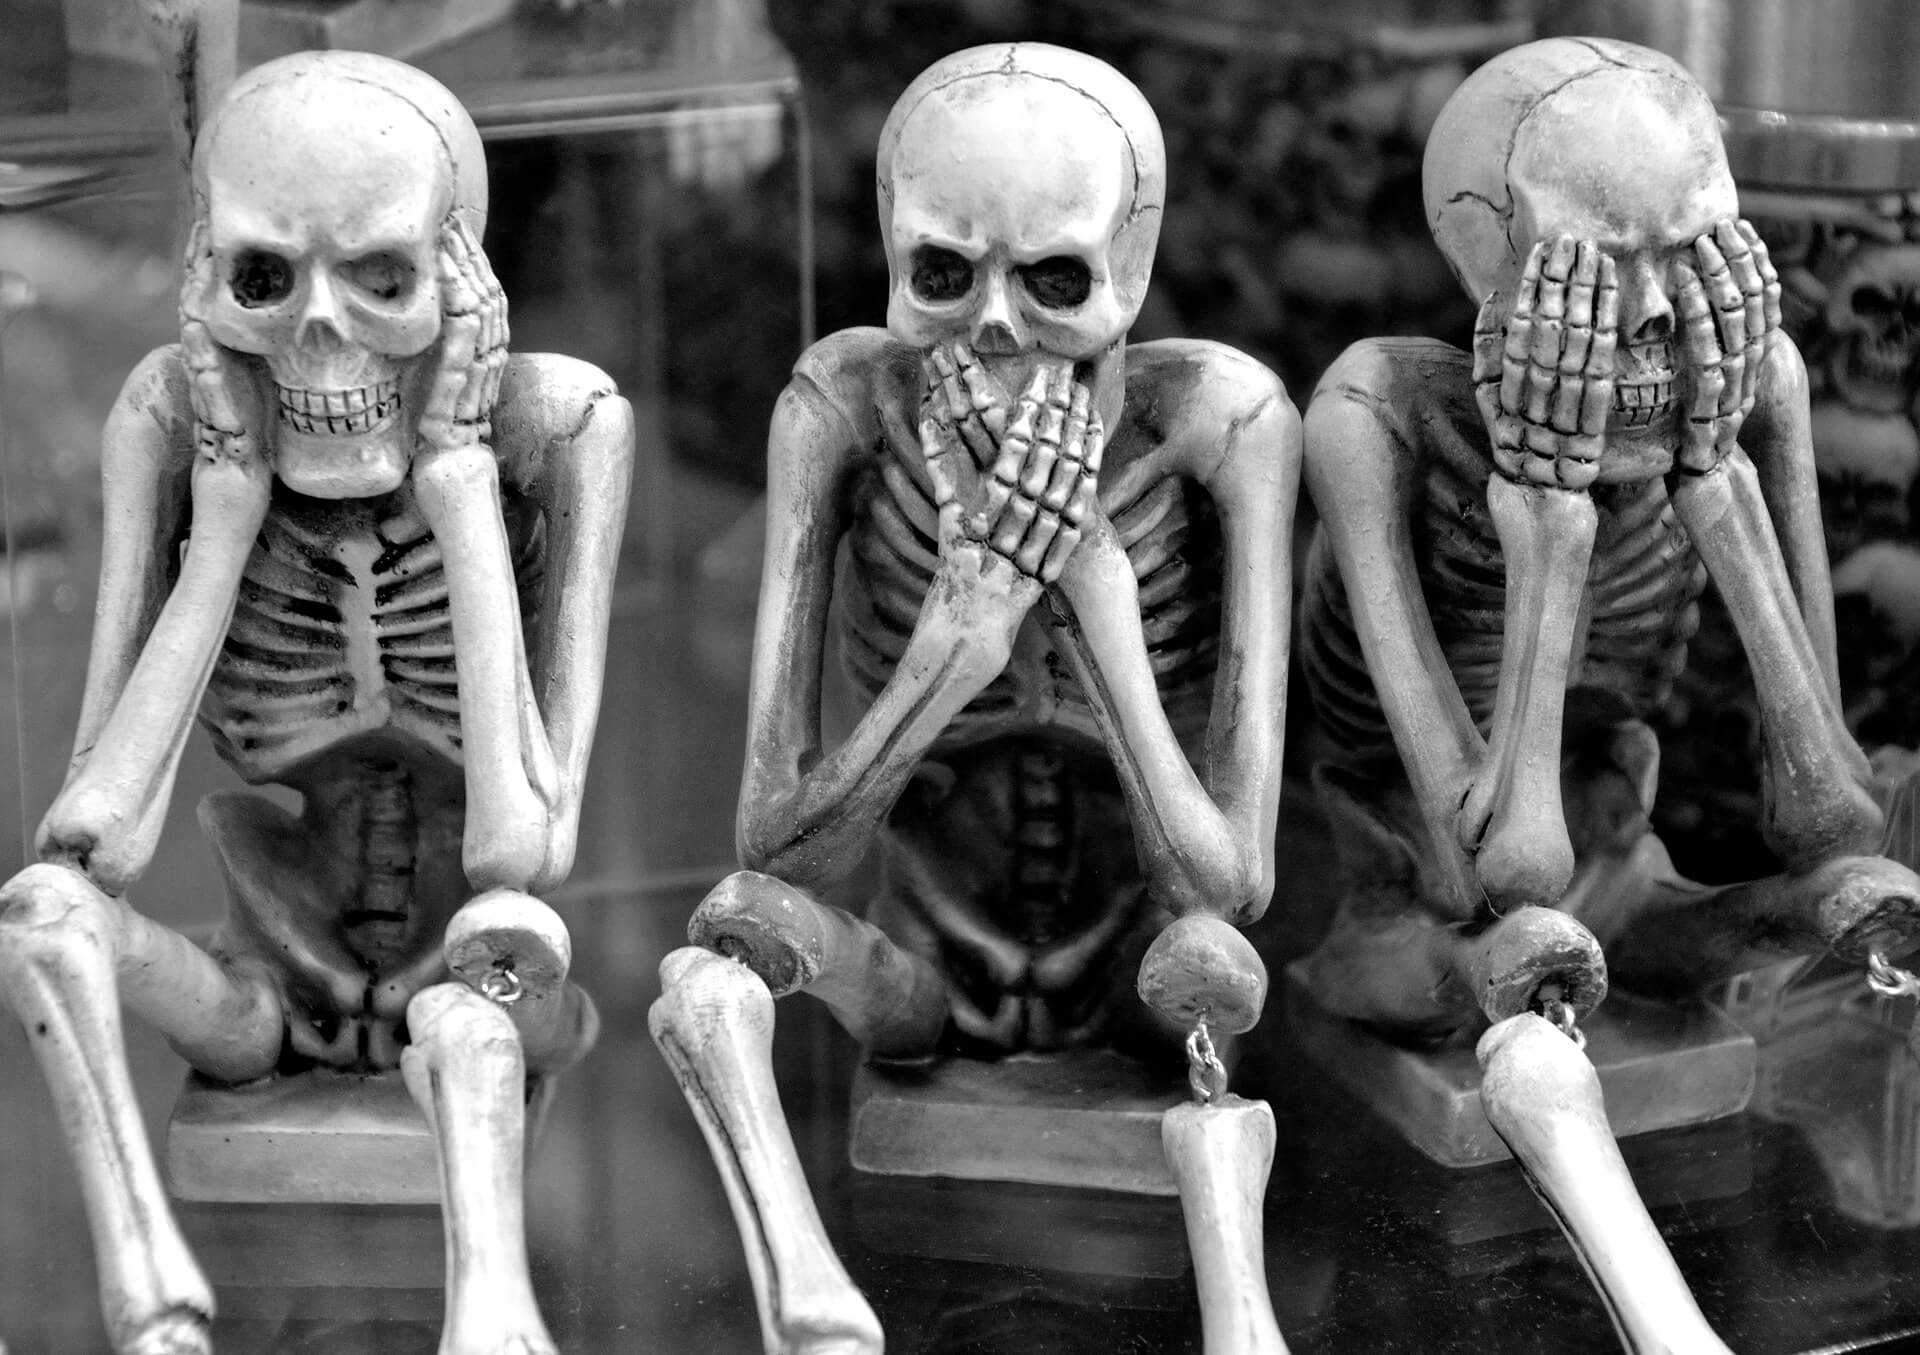 3 squelettes en noir et blanc, l'un se bouche les oreilles, l'autre se masque la bouche et le dernier se cache les yeux